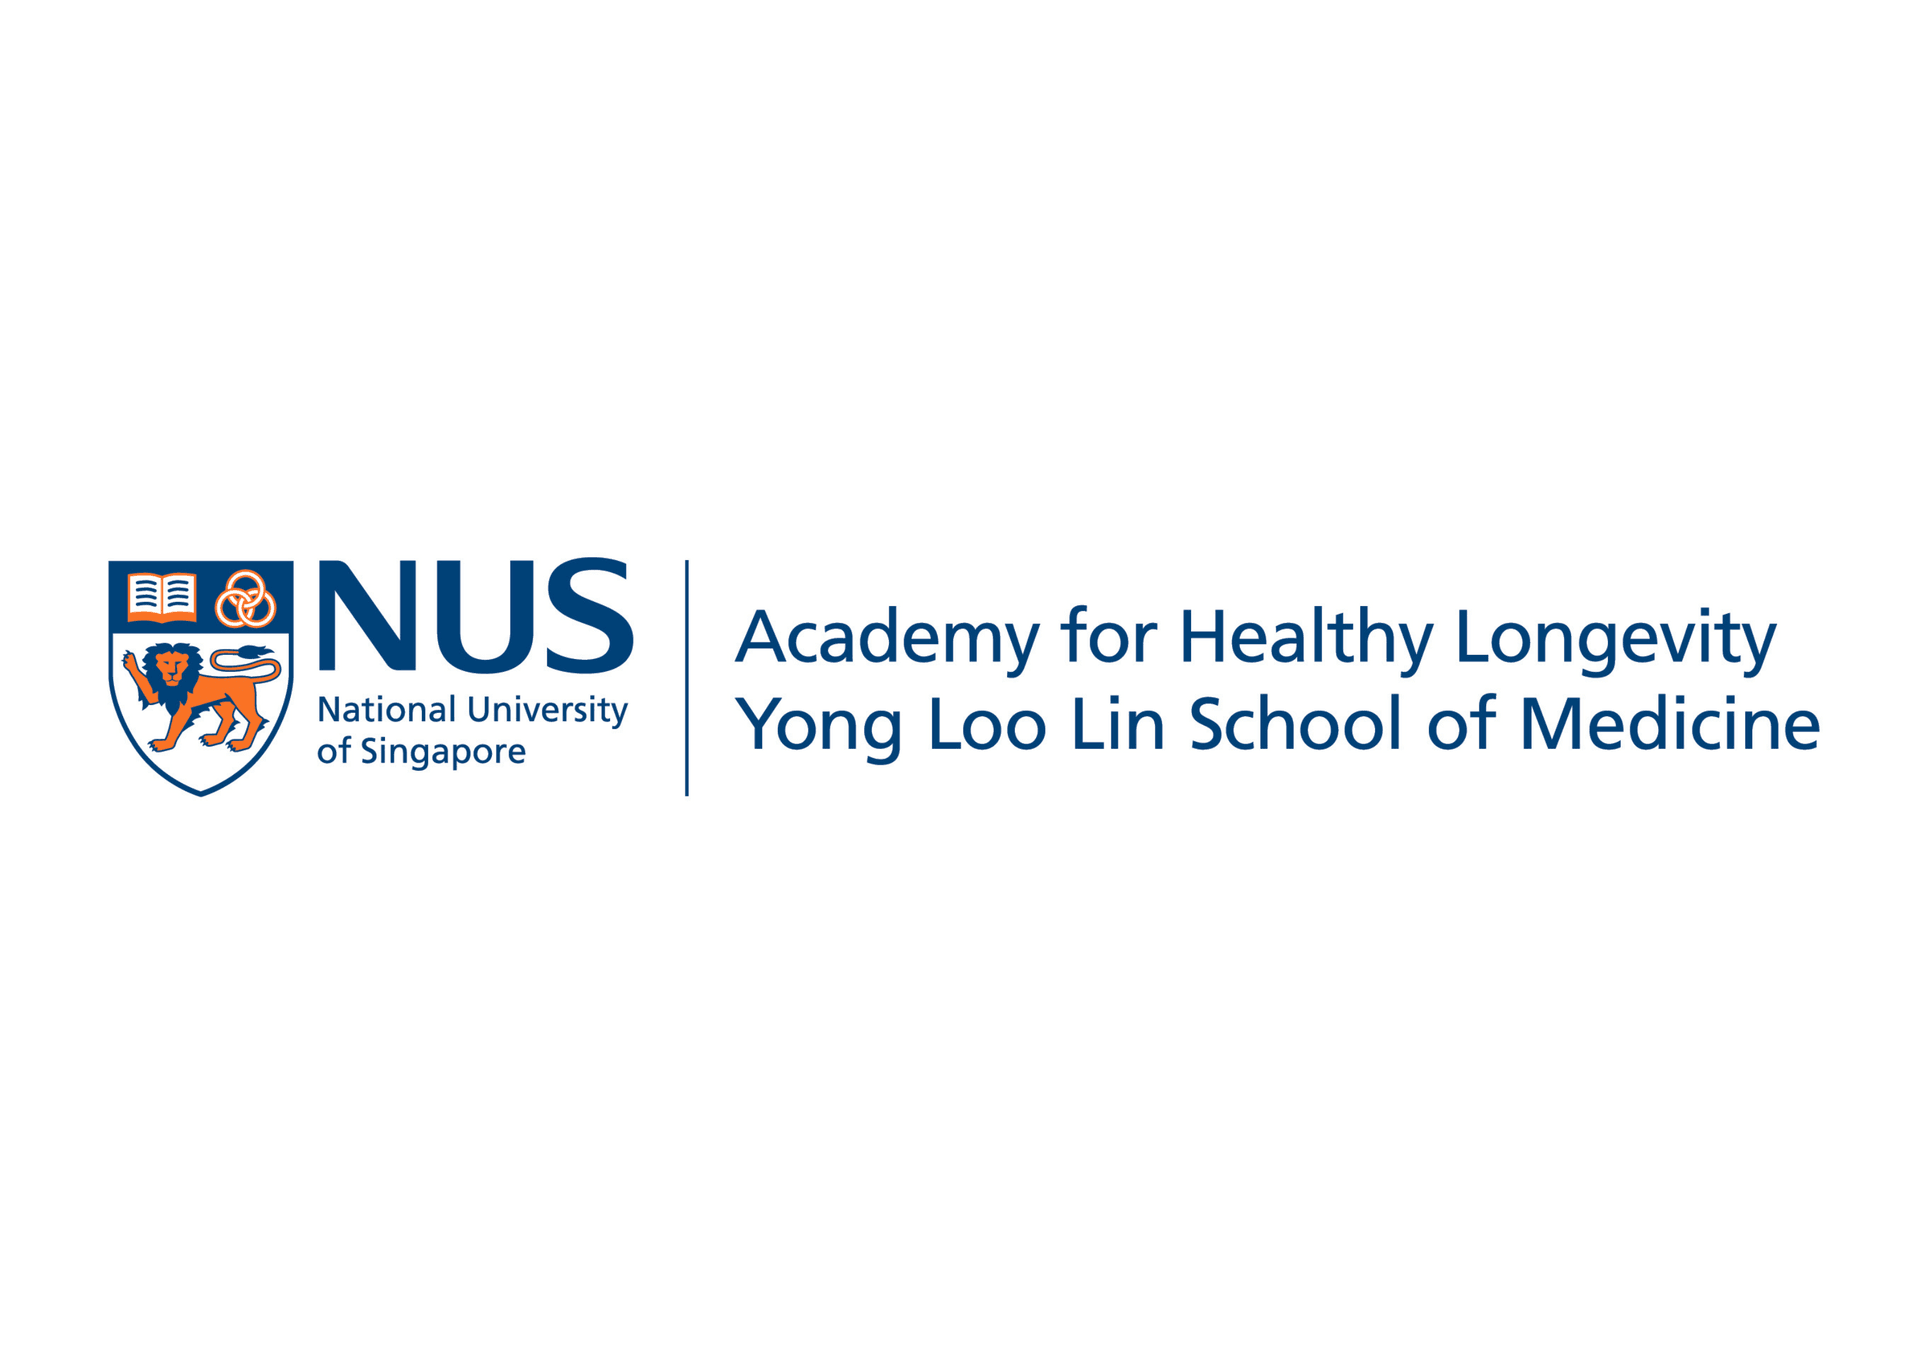 NUS Academy for Healthy Longevity